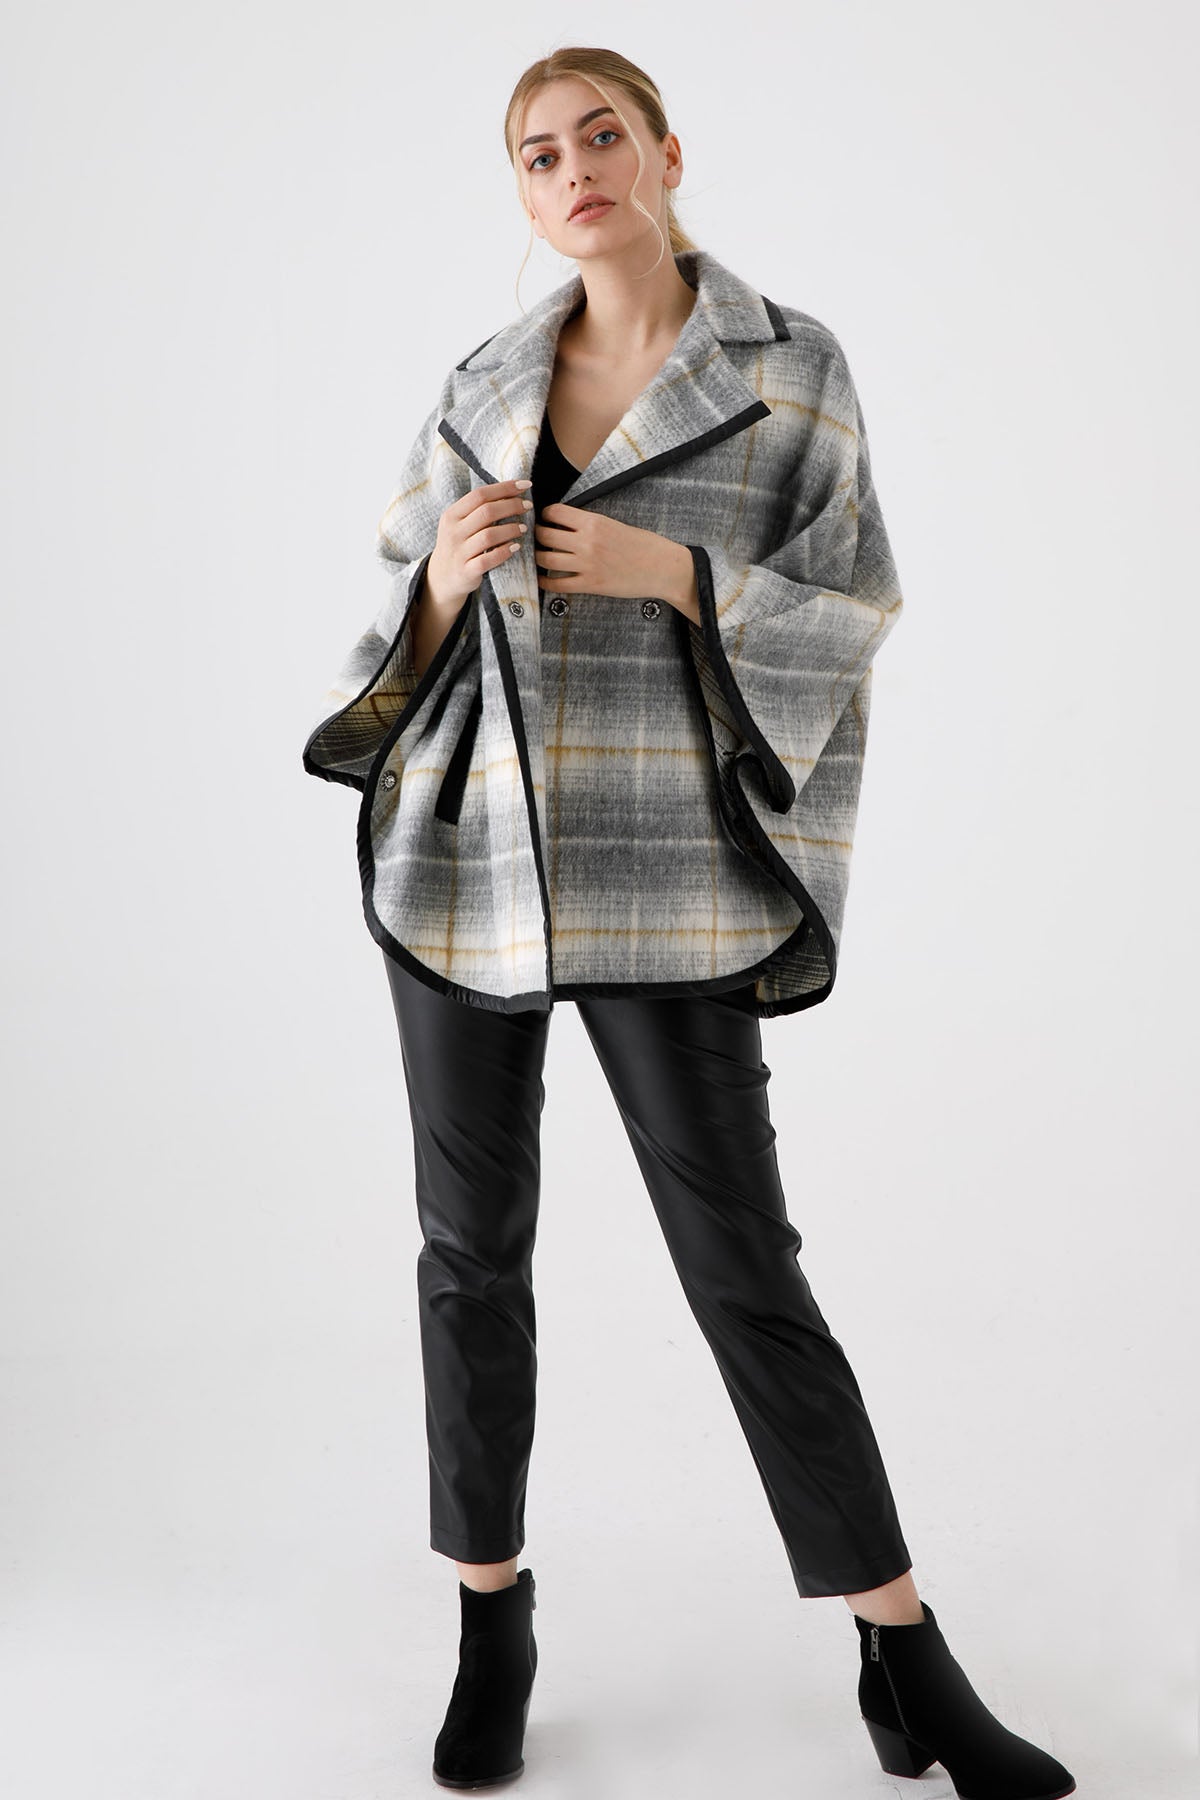 Liu Jo Geniş Kesim Ekoseli Yün Panço Ceket-Libas Trendy Fashion Store